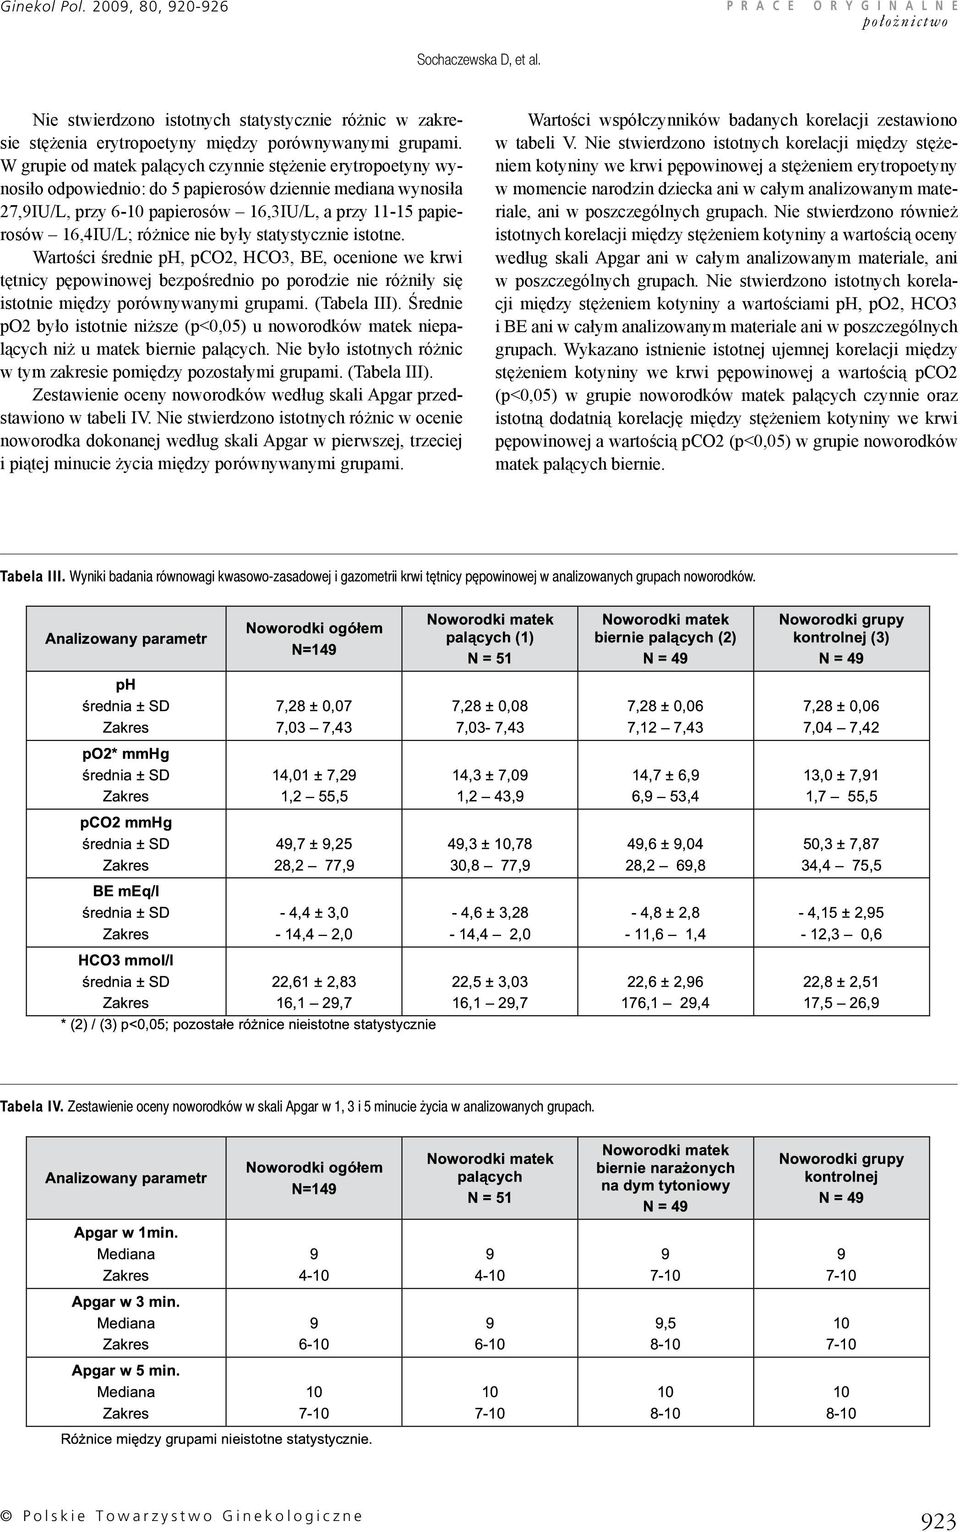 różnice nie były statystycznie istotne. Wartości średnie ph, pco2, HCO3, BE, ocenione we krwi tętnicy pępowinowej bezpośrednio po porodzie nie różniły się istotnie między porównywanymi grupami.